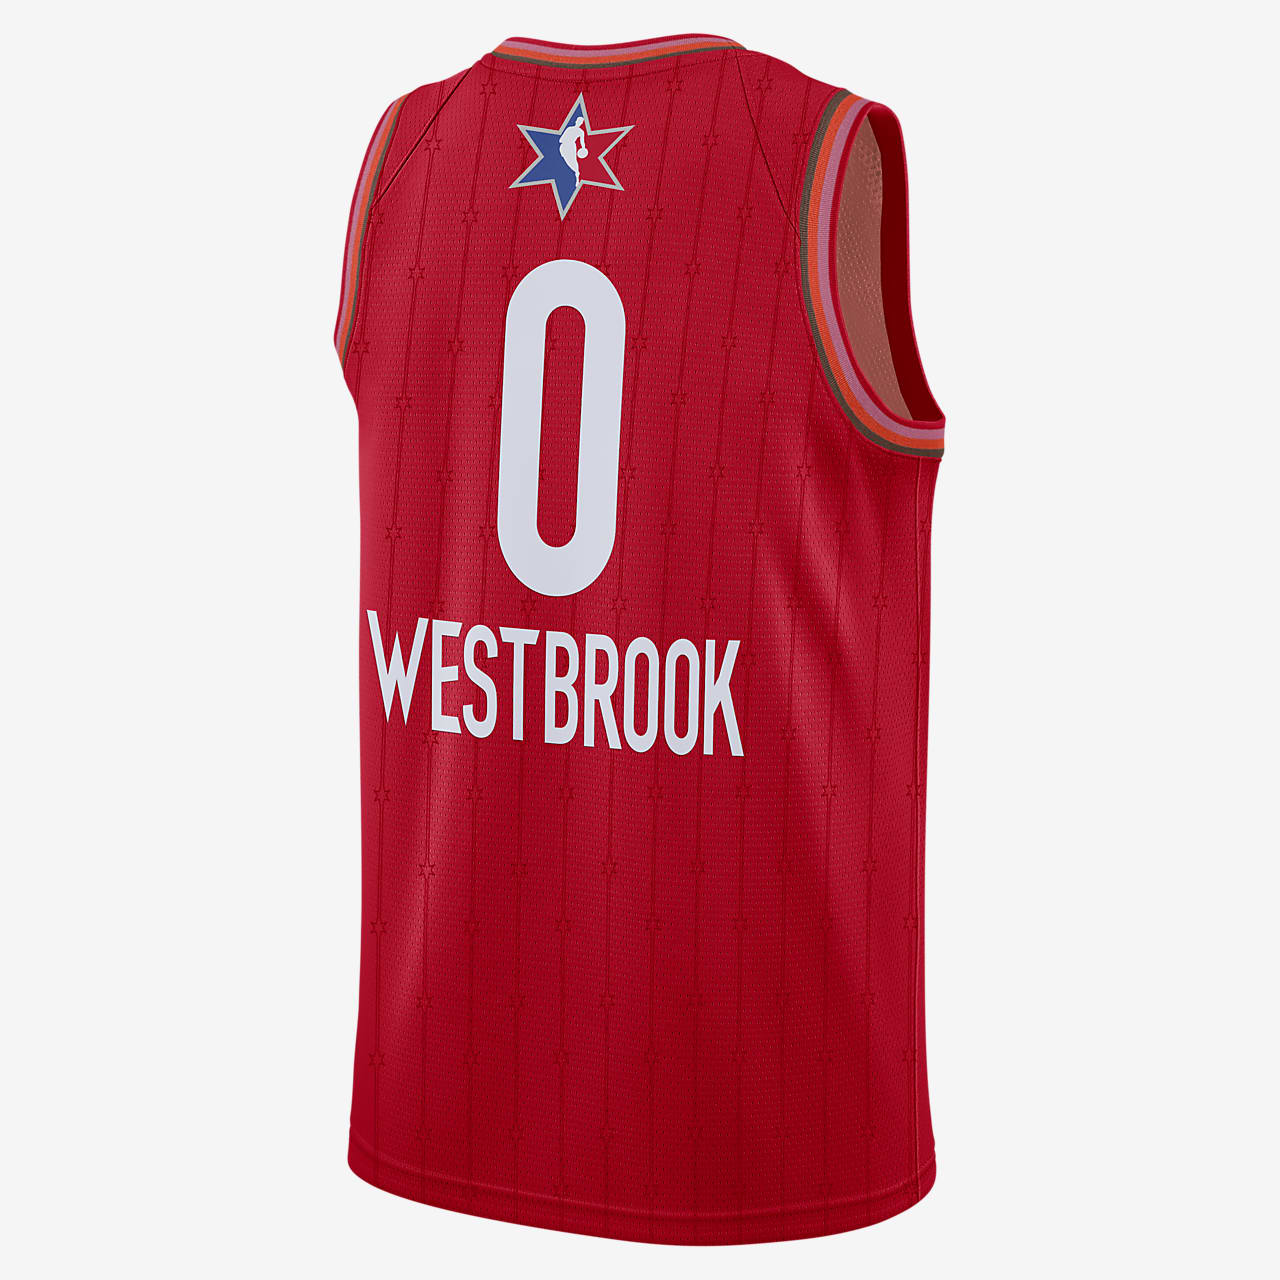 westbrook jersey sale